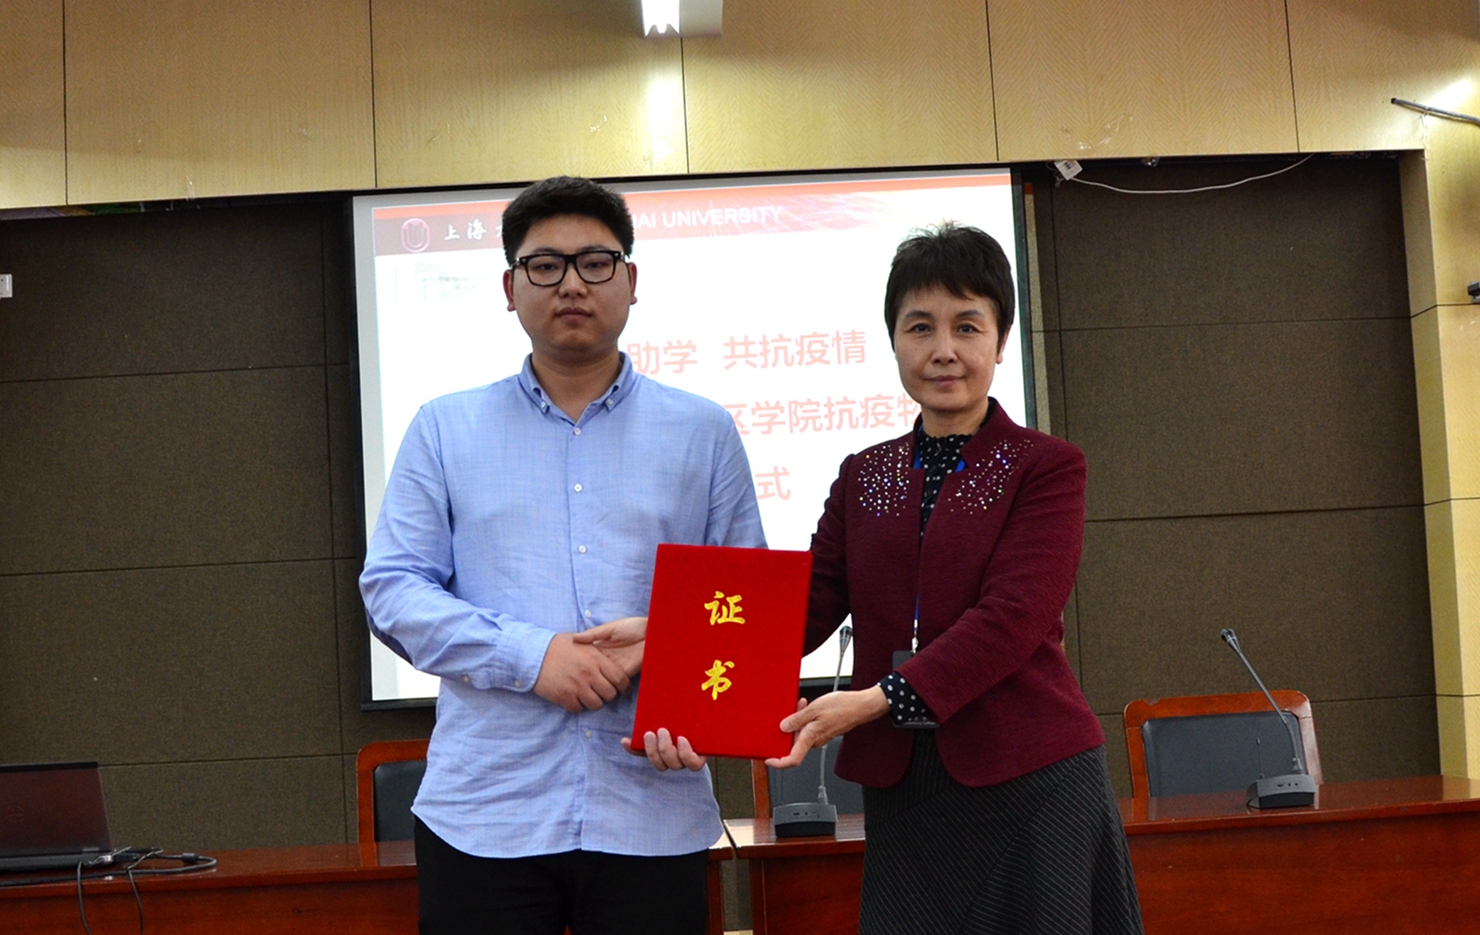 泽稷网校：上海大学社区学院向泽稷教育捐赠防疫物资表示衷心感谢